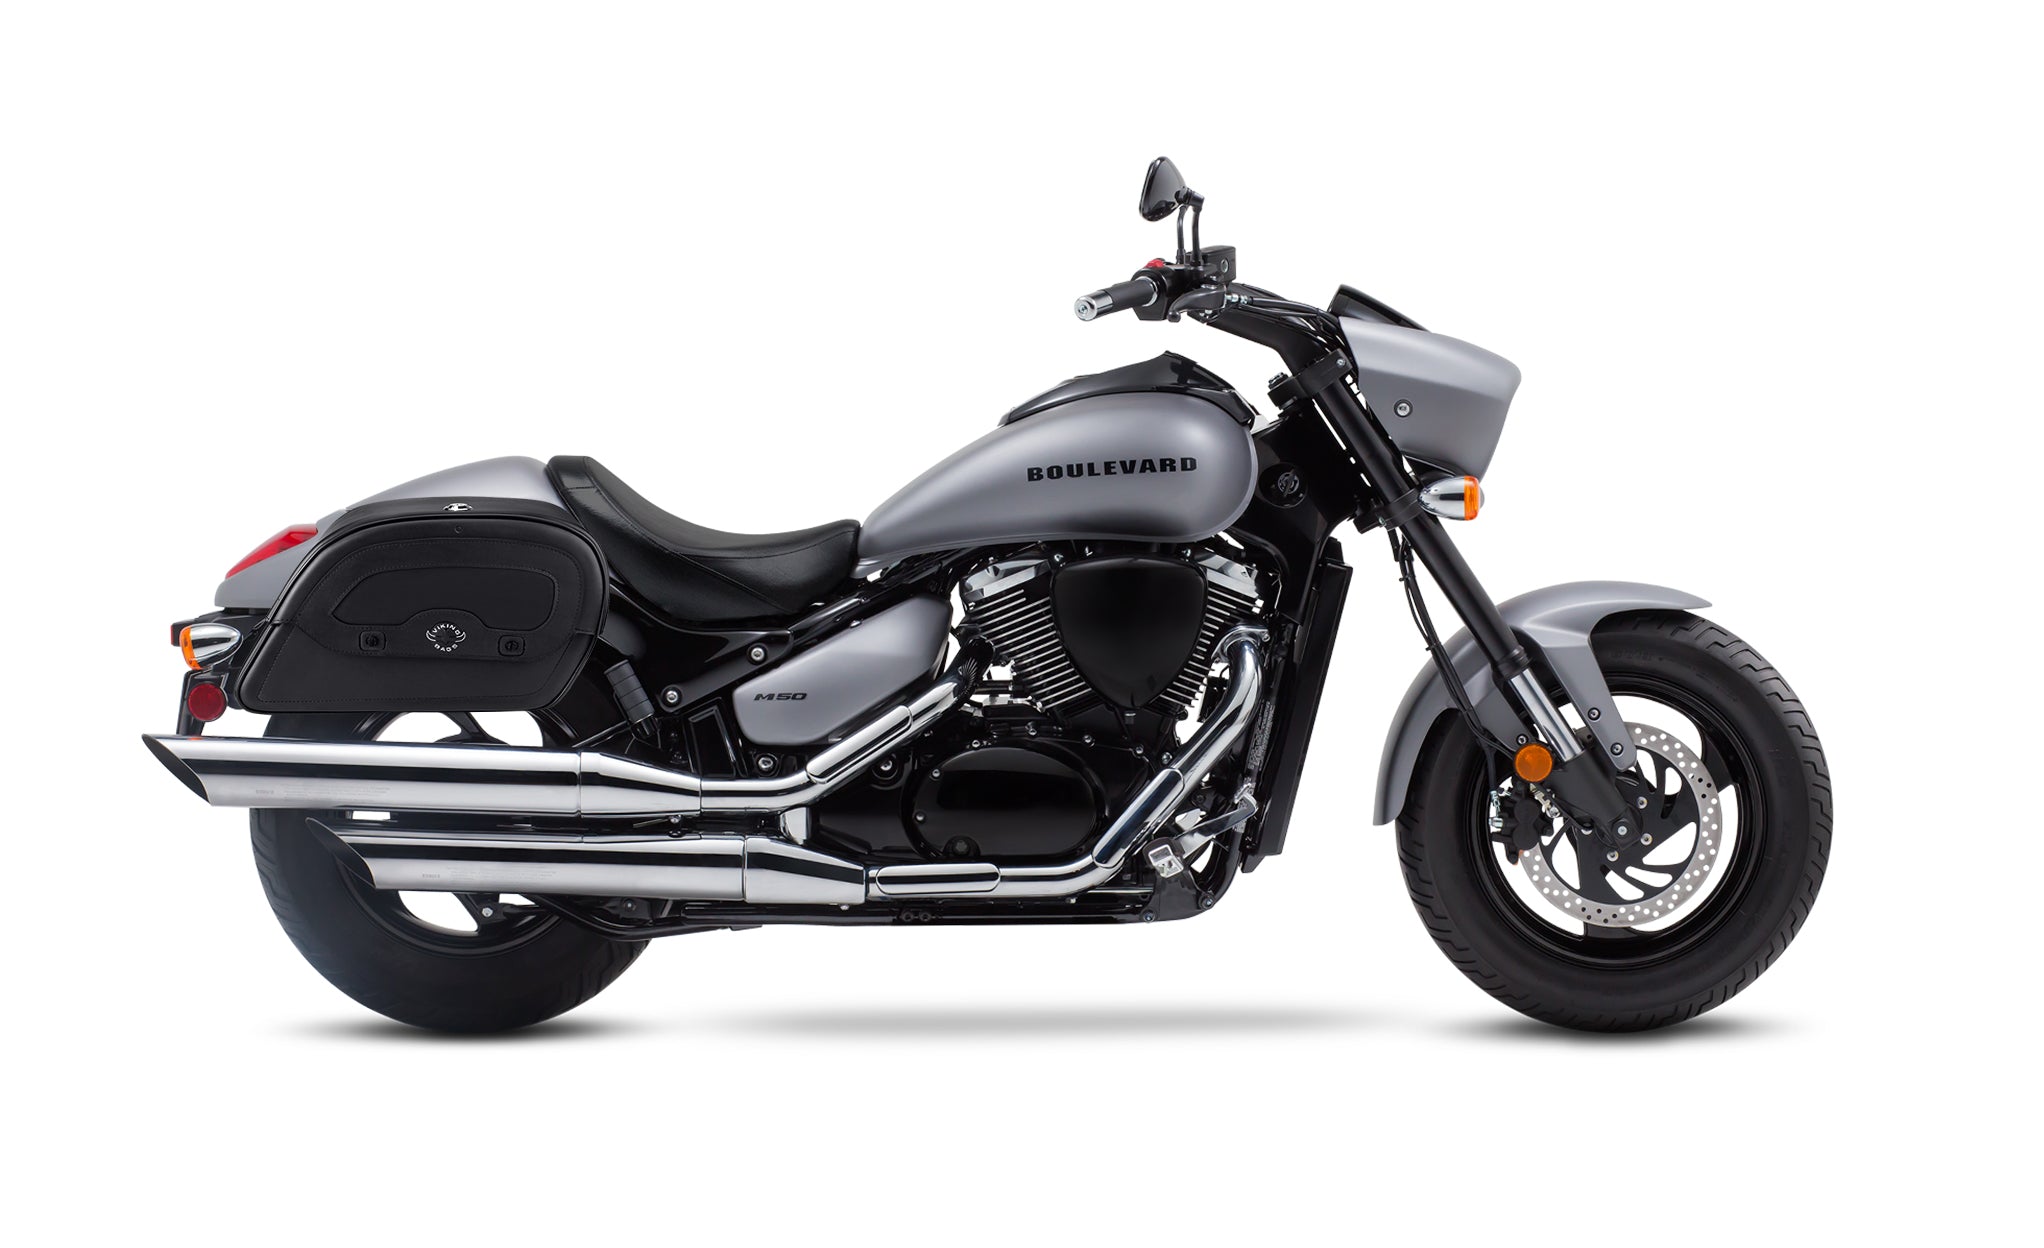 Viking Warrior Medium Suzuki Boulevard M50 Vz800 Leather Motorcycle Saddlebags on Bike Photo @expand